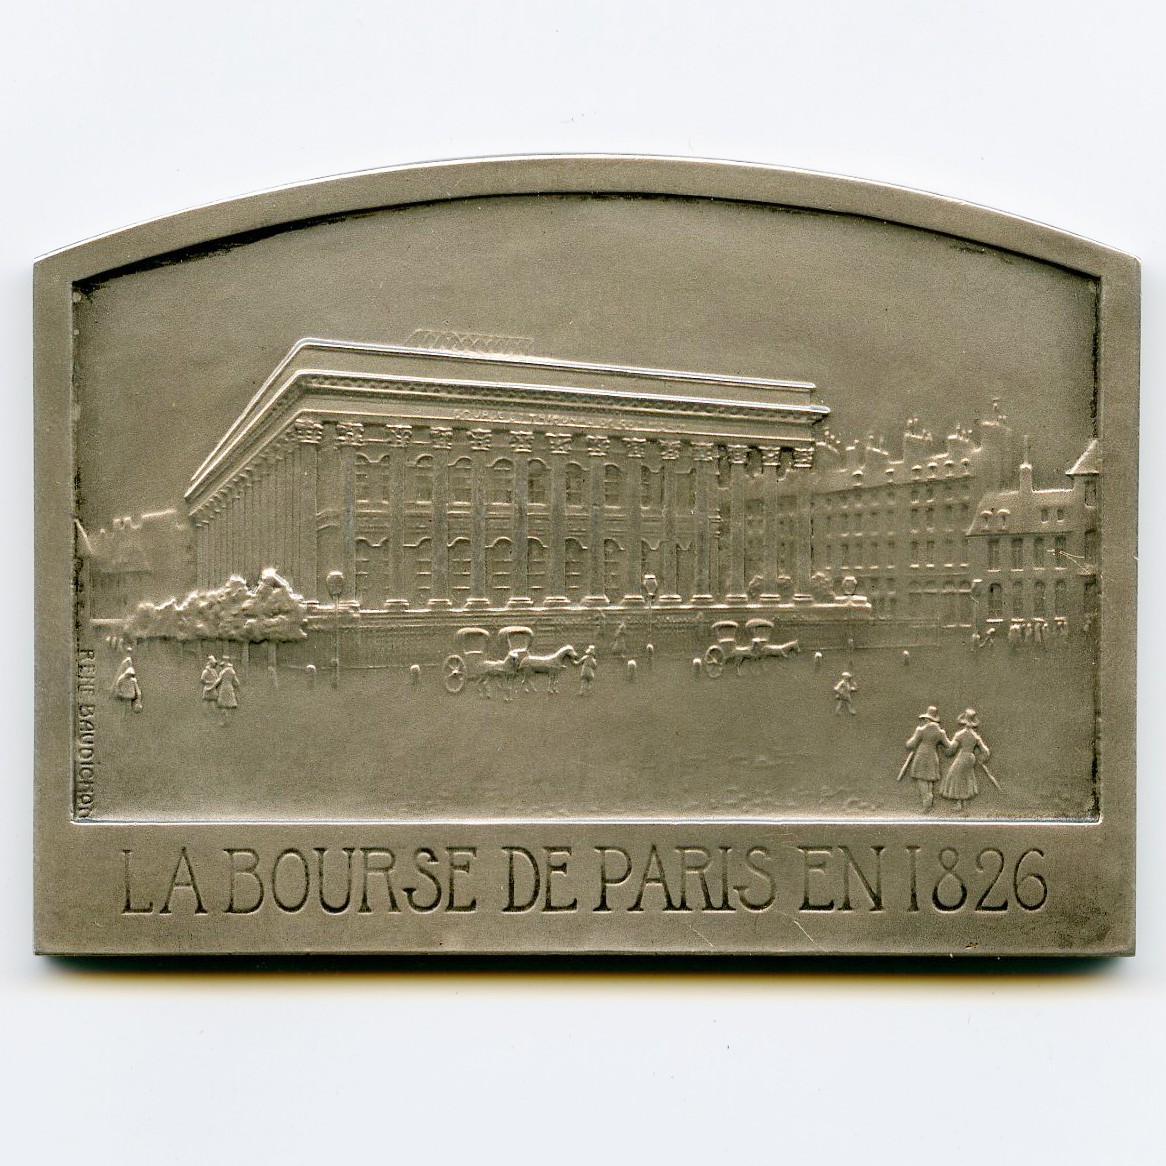 Bourse de Paris - Médaille Argent - 1926 avers